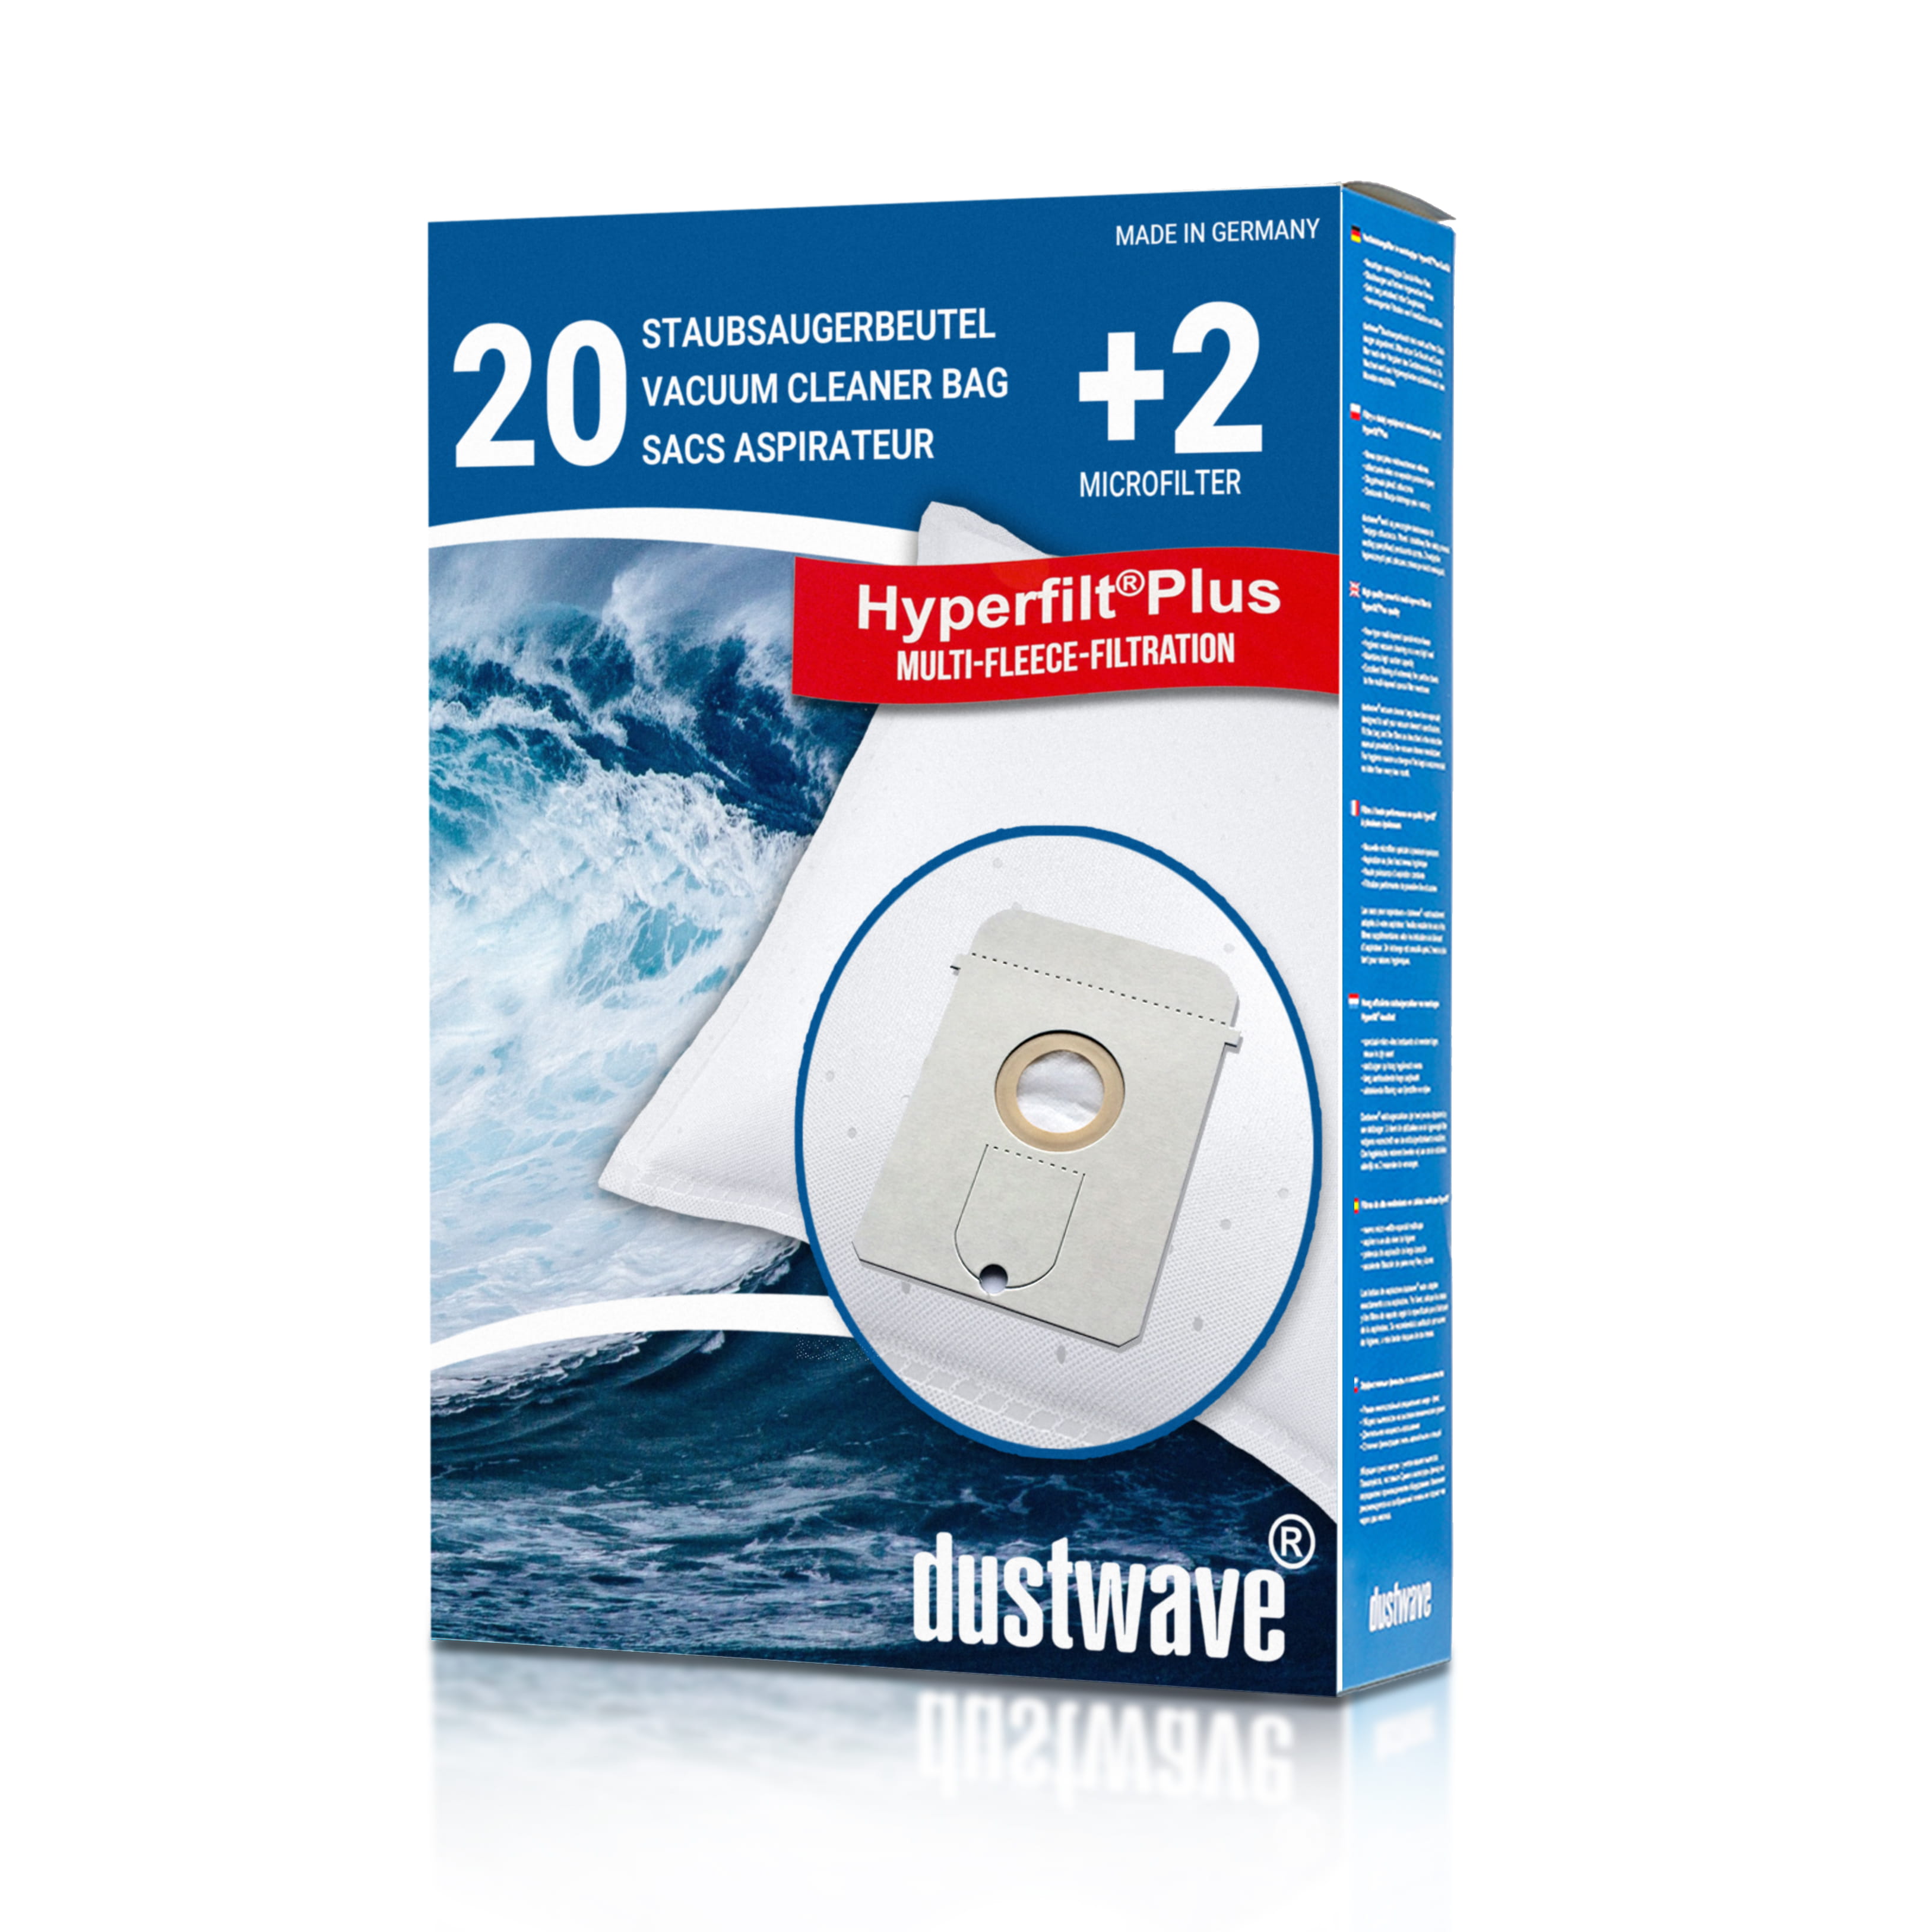 Dustwave® 20 Staubsaugerbeutel für AEG Vampyr 7400 Electronic - hocheffizient, mehrlagiges Mikrovlies mit Hygieneverschluss - Made in Germany